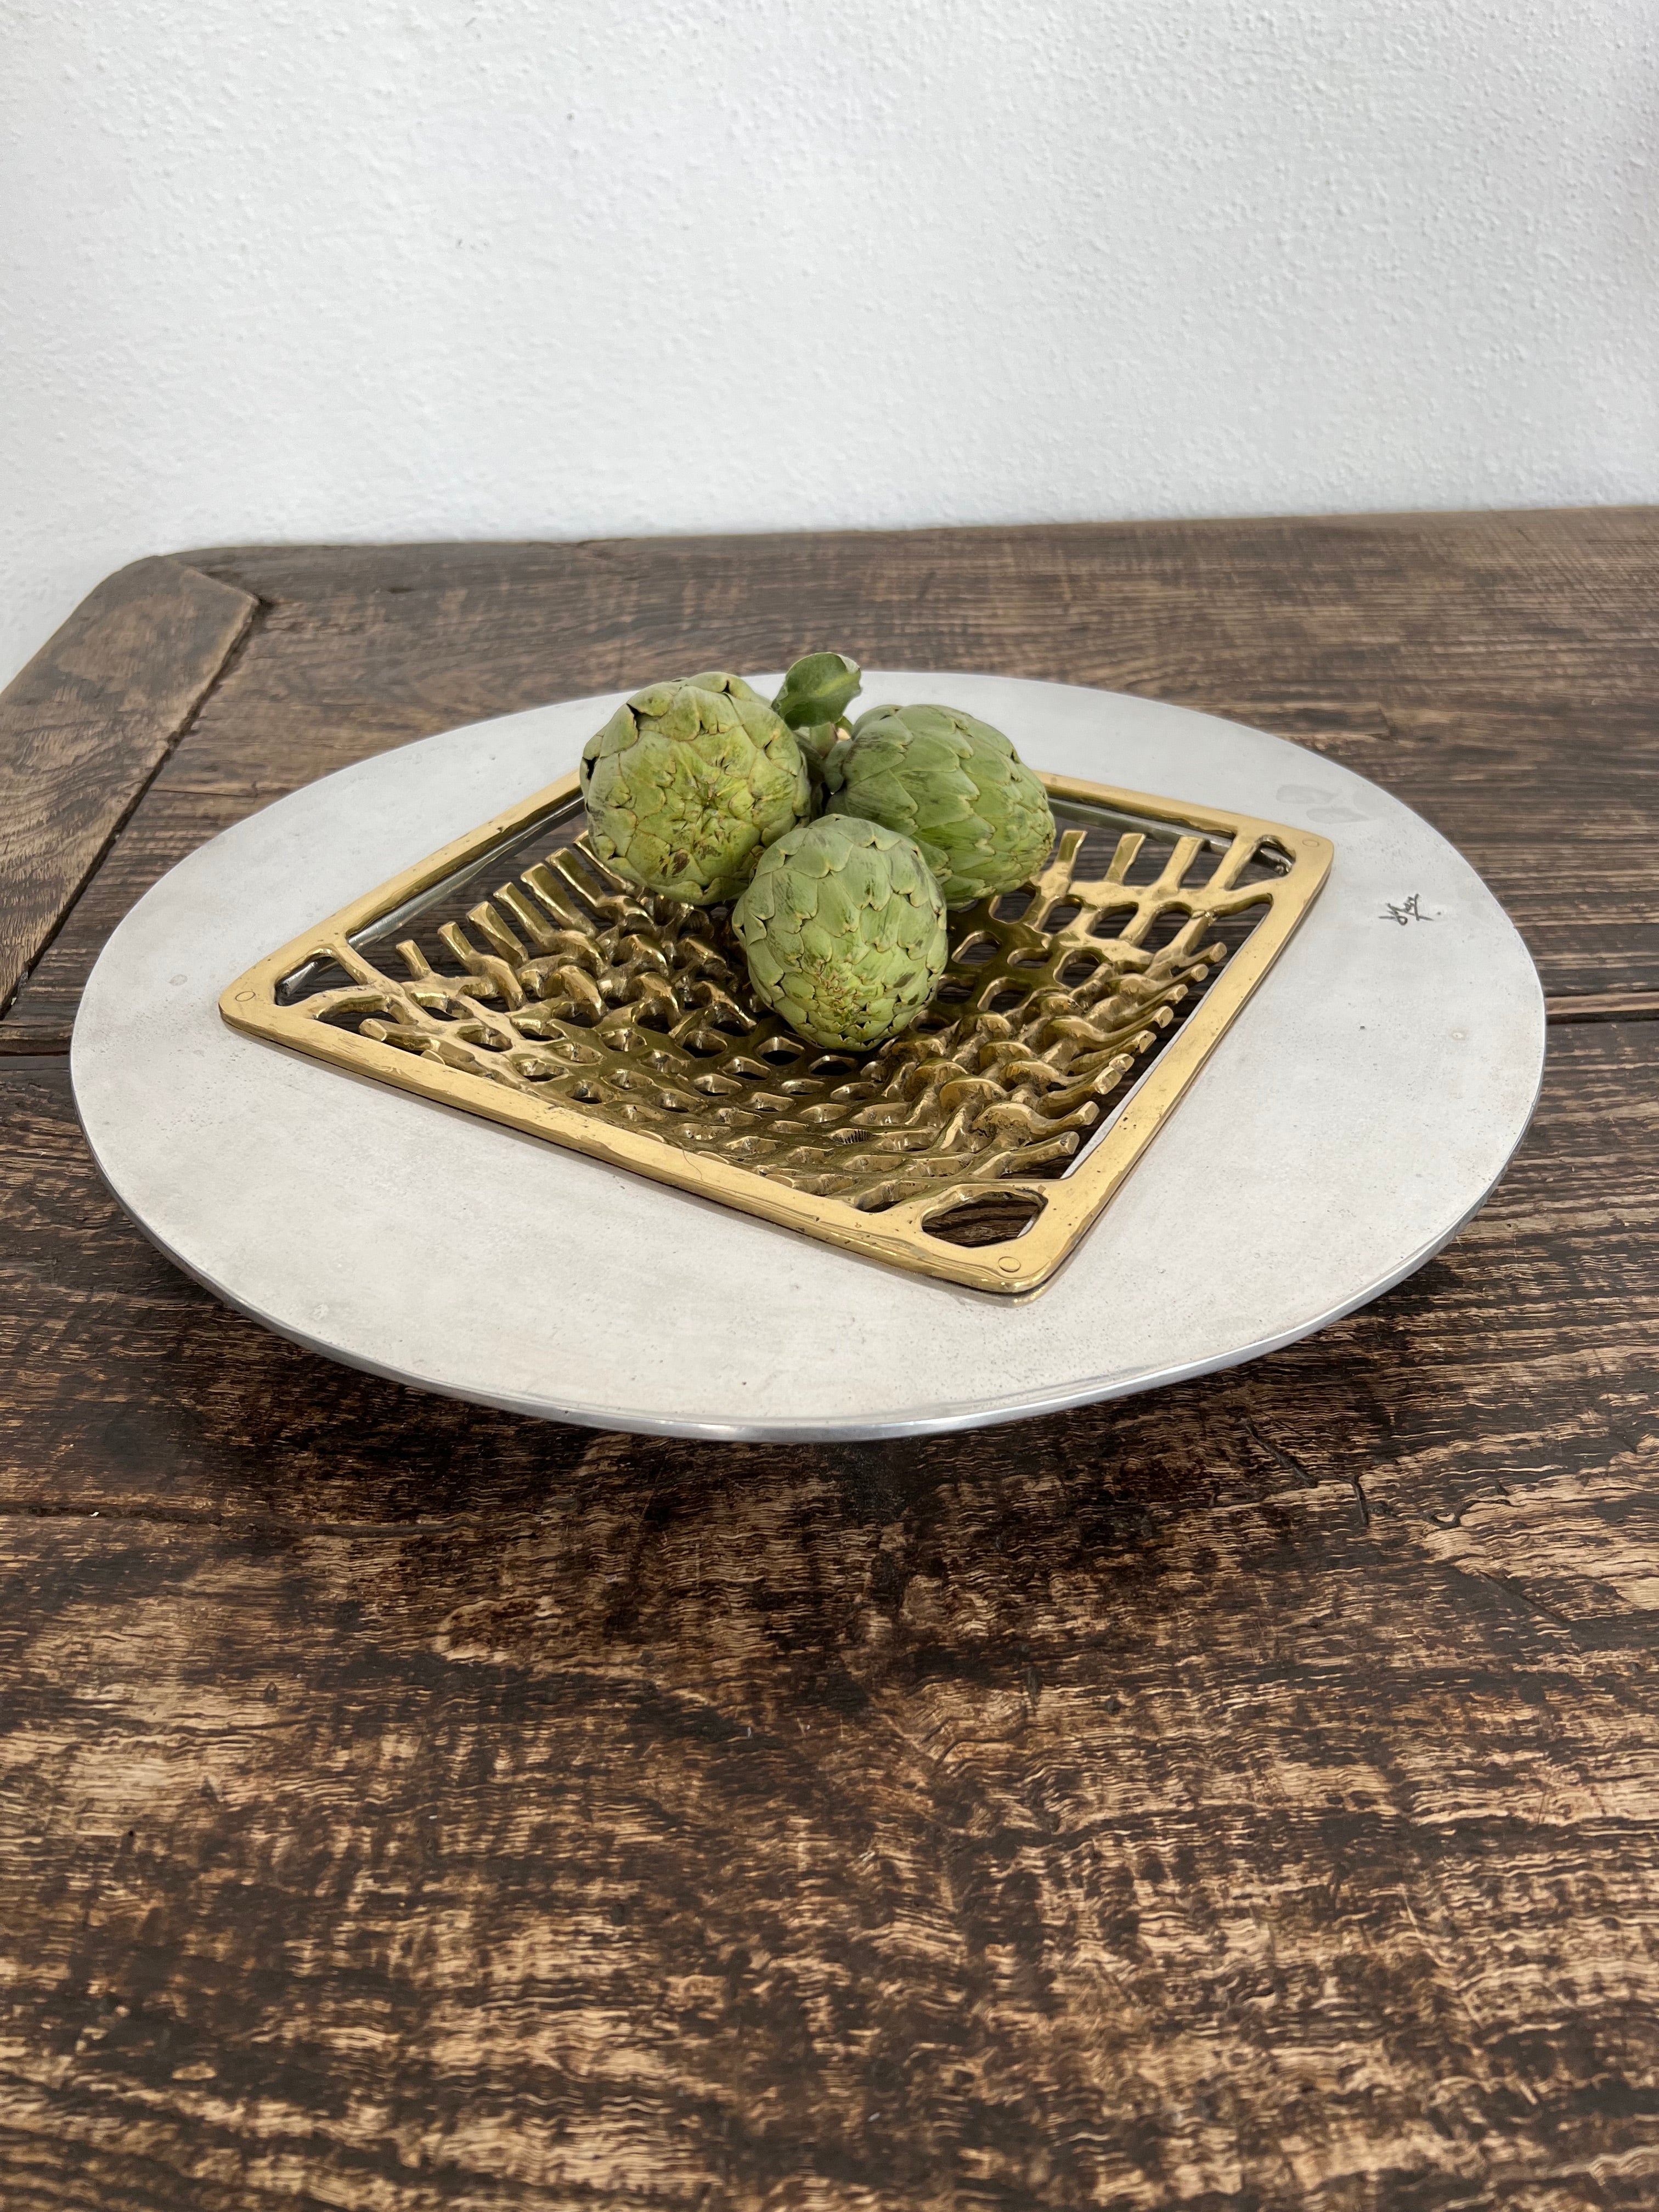 Das dekorative Mesh Fruit Tray wurde von David Marshall entworfen und besteht aus sandgegossenem Aluminium und sandgegossenem Messing.
Handgefertigt, montiert und fertiggestellt in unserer Gießerei und Werkstatt in Spanien aus recycelten